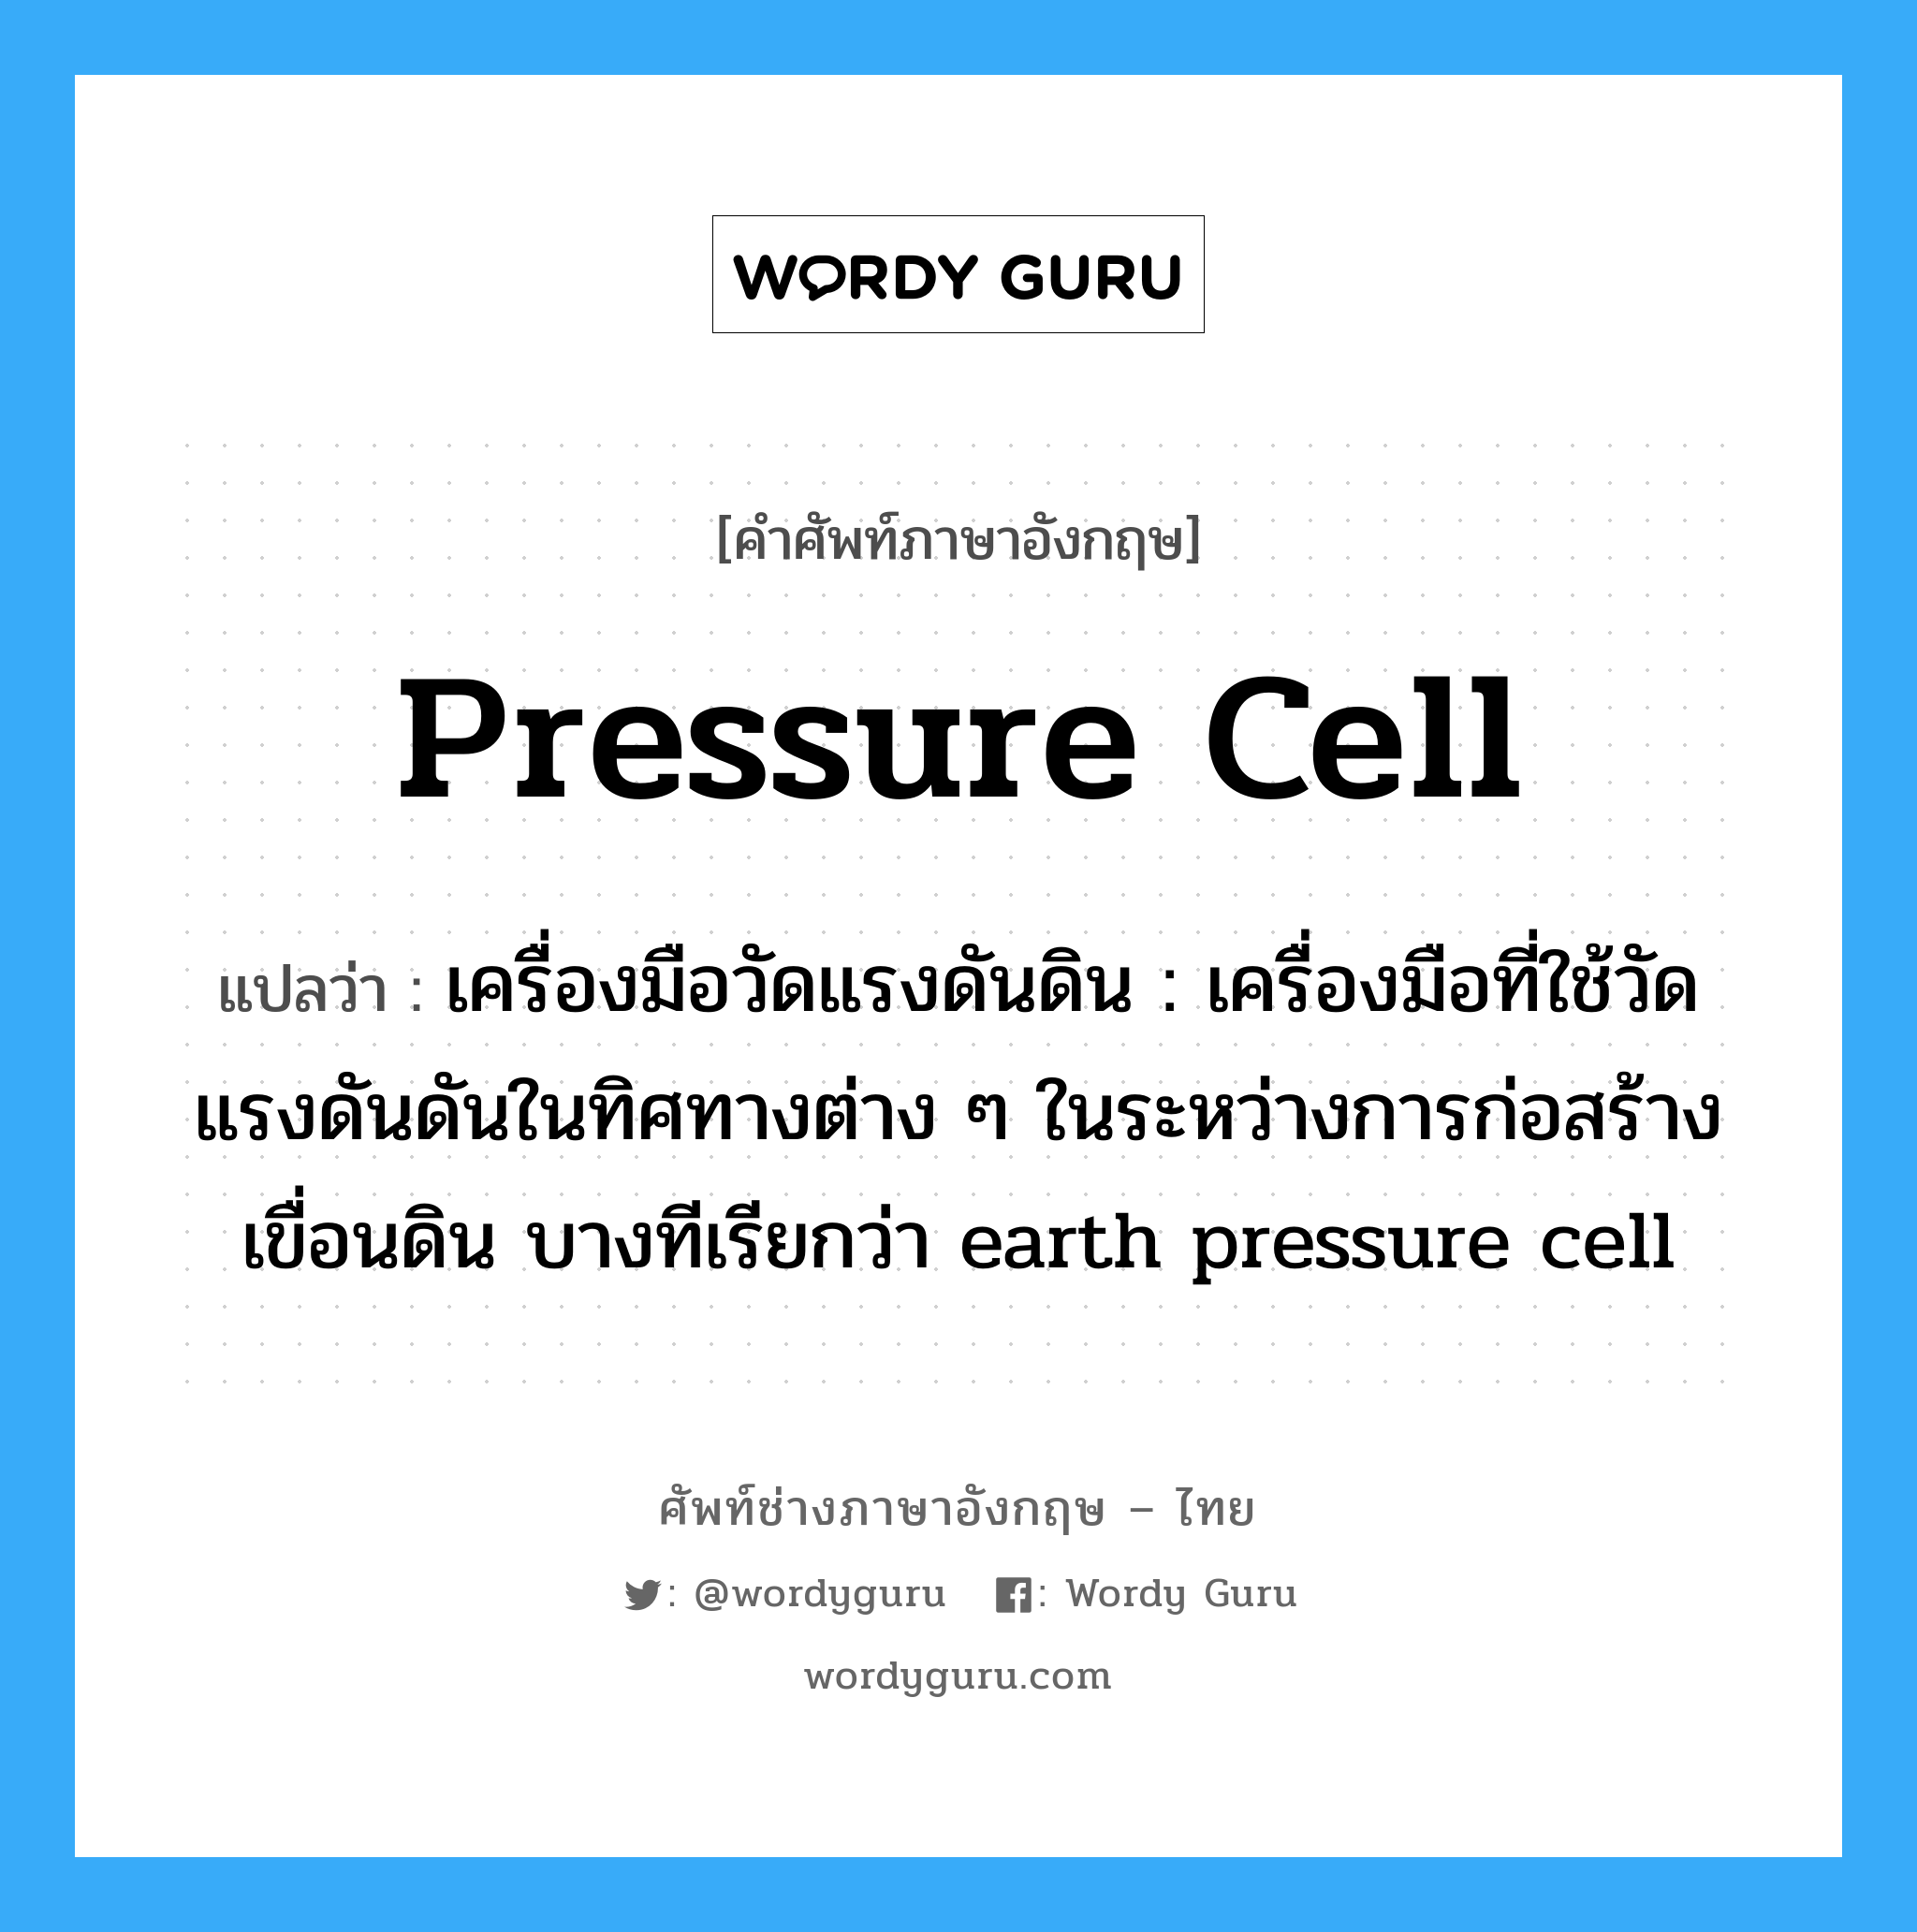 เครื่องมือวัดแรงดันดิน : เครื่องมือที่ใช้วัดแรงดันดันในทิศทางต่าง ๆ ในระหว่างการก่อสร้างเขื่อนดิน บางทีเรียกว่า earth pressure cell ภาษาอังกฤษ?, คำศัพท์ช่างภาษาอังกฤษ - ไทย เครื่องมือวัดแรงดันดิน : เครื่องมือที่ใช้วัดแรงดันดันในทิศทางต่าง ๆ ในระหว่างการก่อสร้างเขื่อนดิน บางทีเรียกว่า earth pressure cell คำศัพท์ภาษาอังกฤษ เครื่องมือวัดแรงดันดิน : เครื่องมือที่ใช้วัดแรงดันดันในทิศทางต่าง ๆ ในระหว่างการก่อสร้างเขื่อนดิน บางทีเรียกว่า earth pressure cell แปลว่า pressure cell